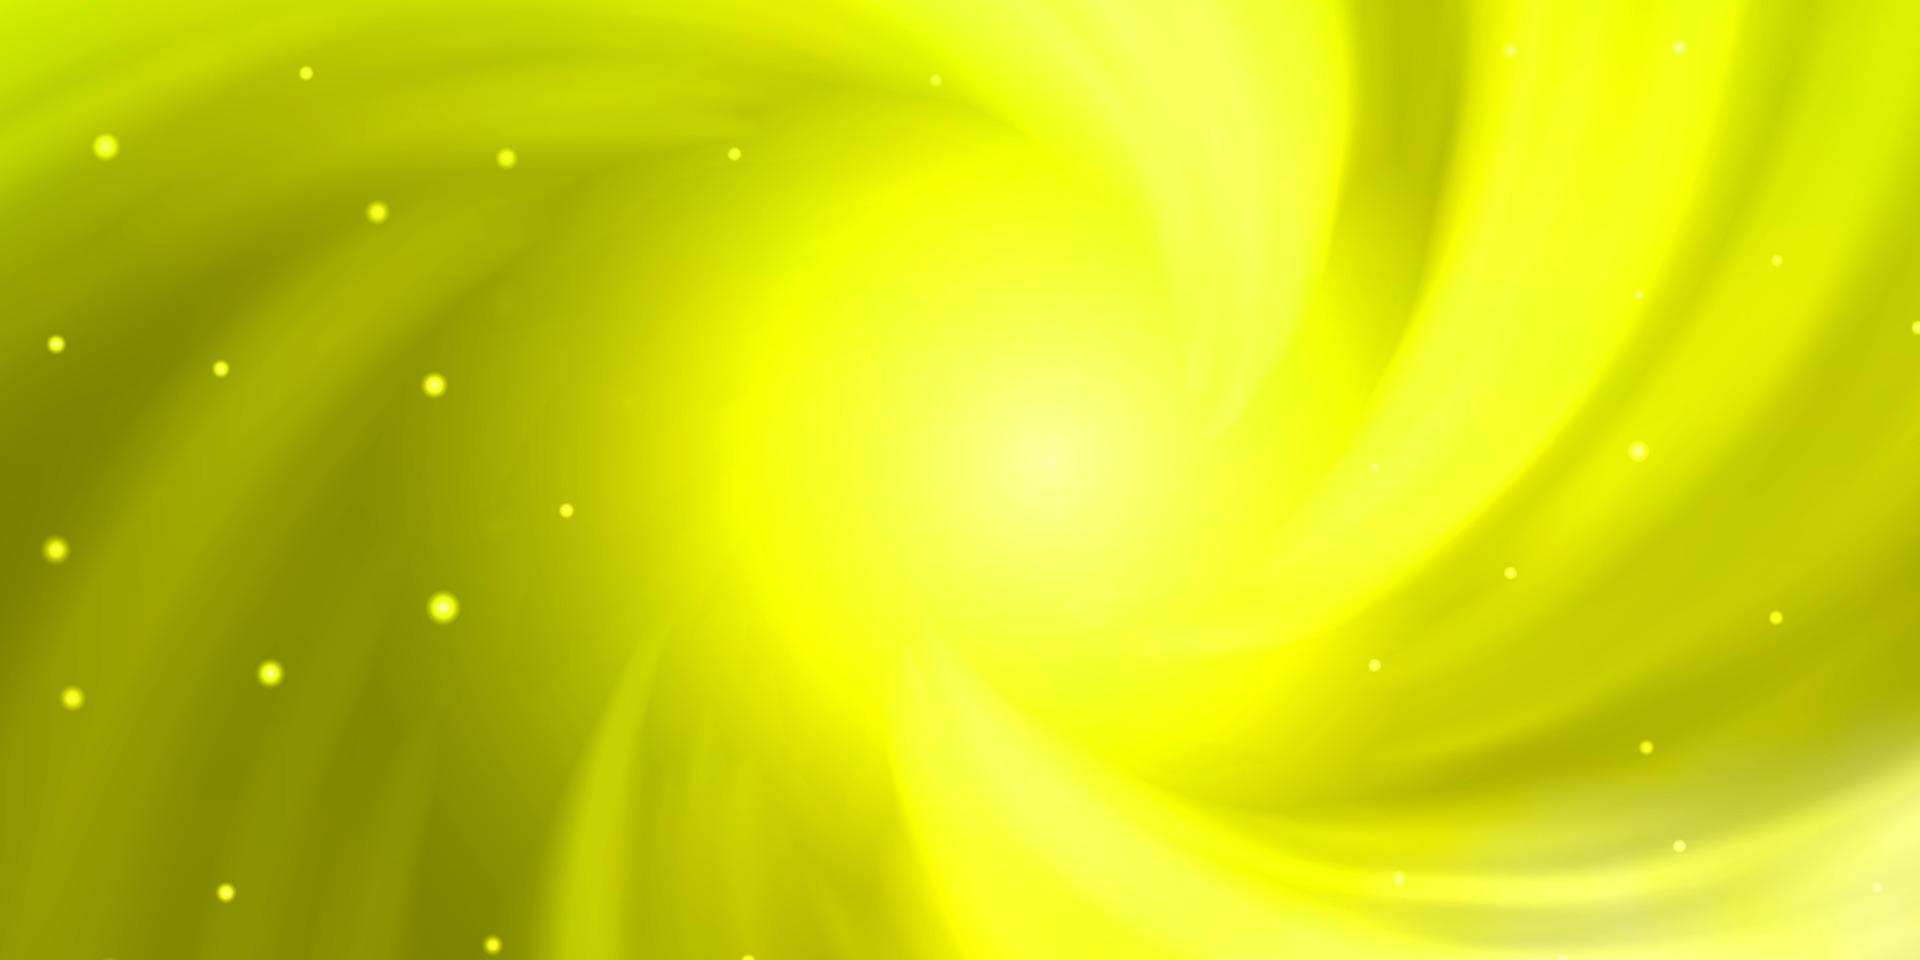 Fondo de vector verde claro, amarillo con estrellas pequeñas y grandes.